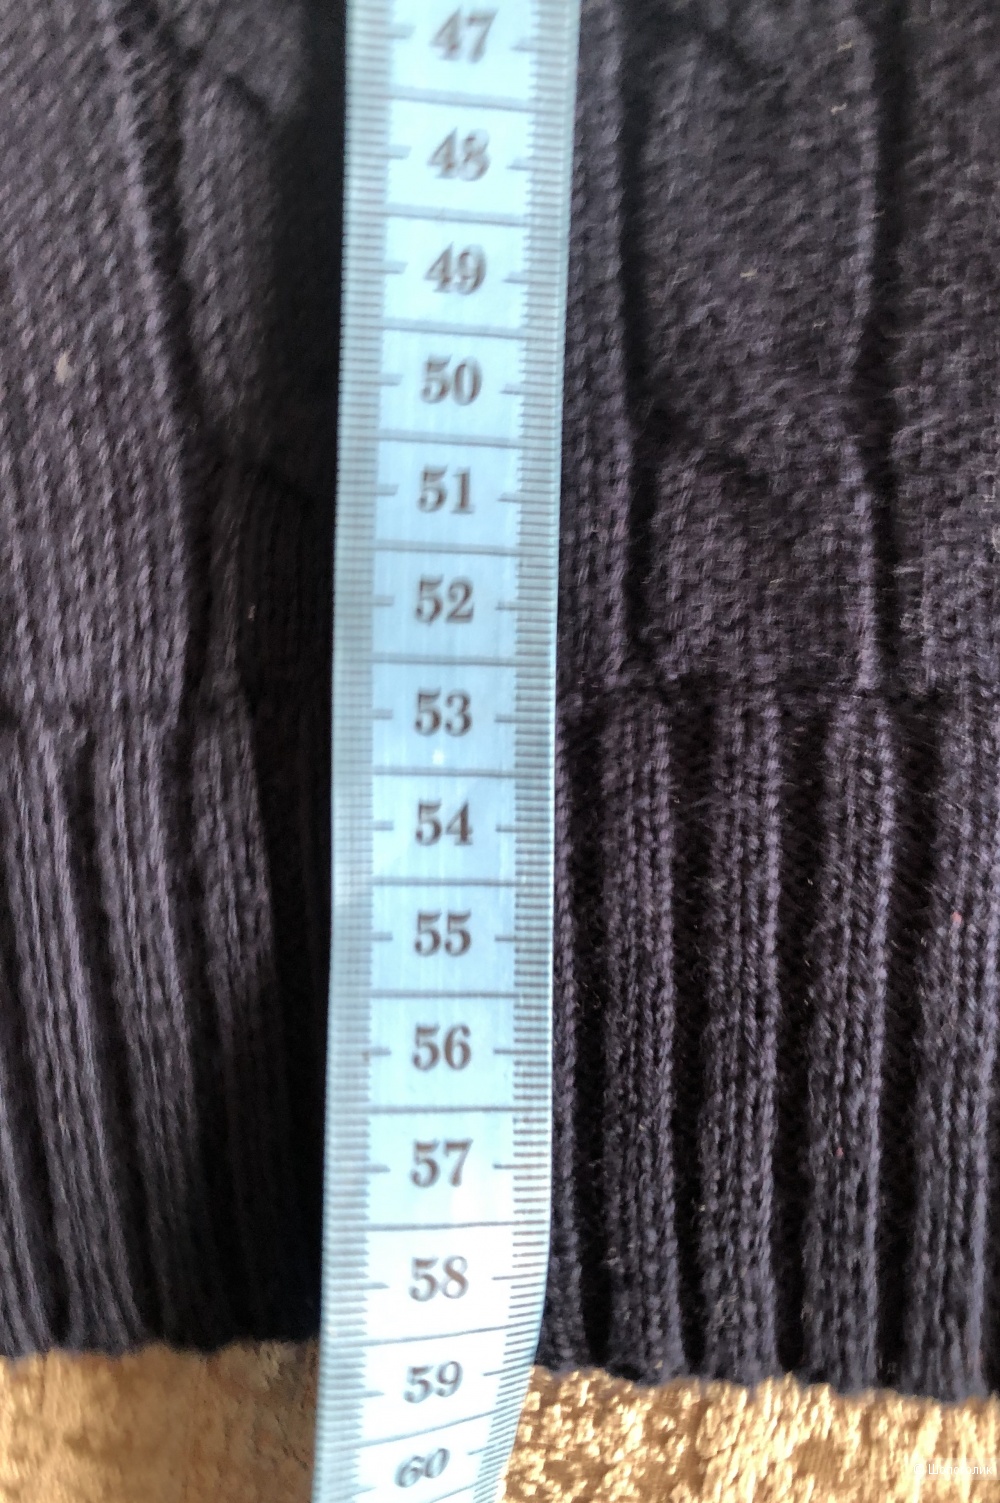 Пуловер POLO RALPH LAUREN размер M ( 46-48)